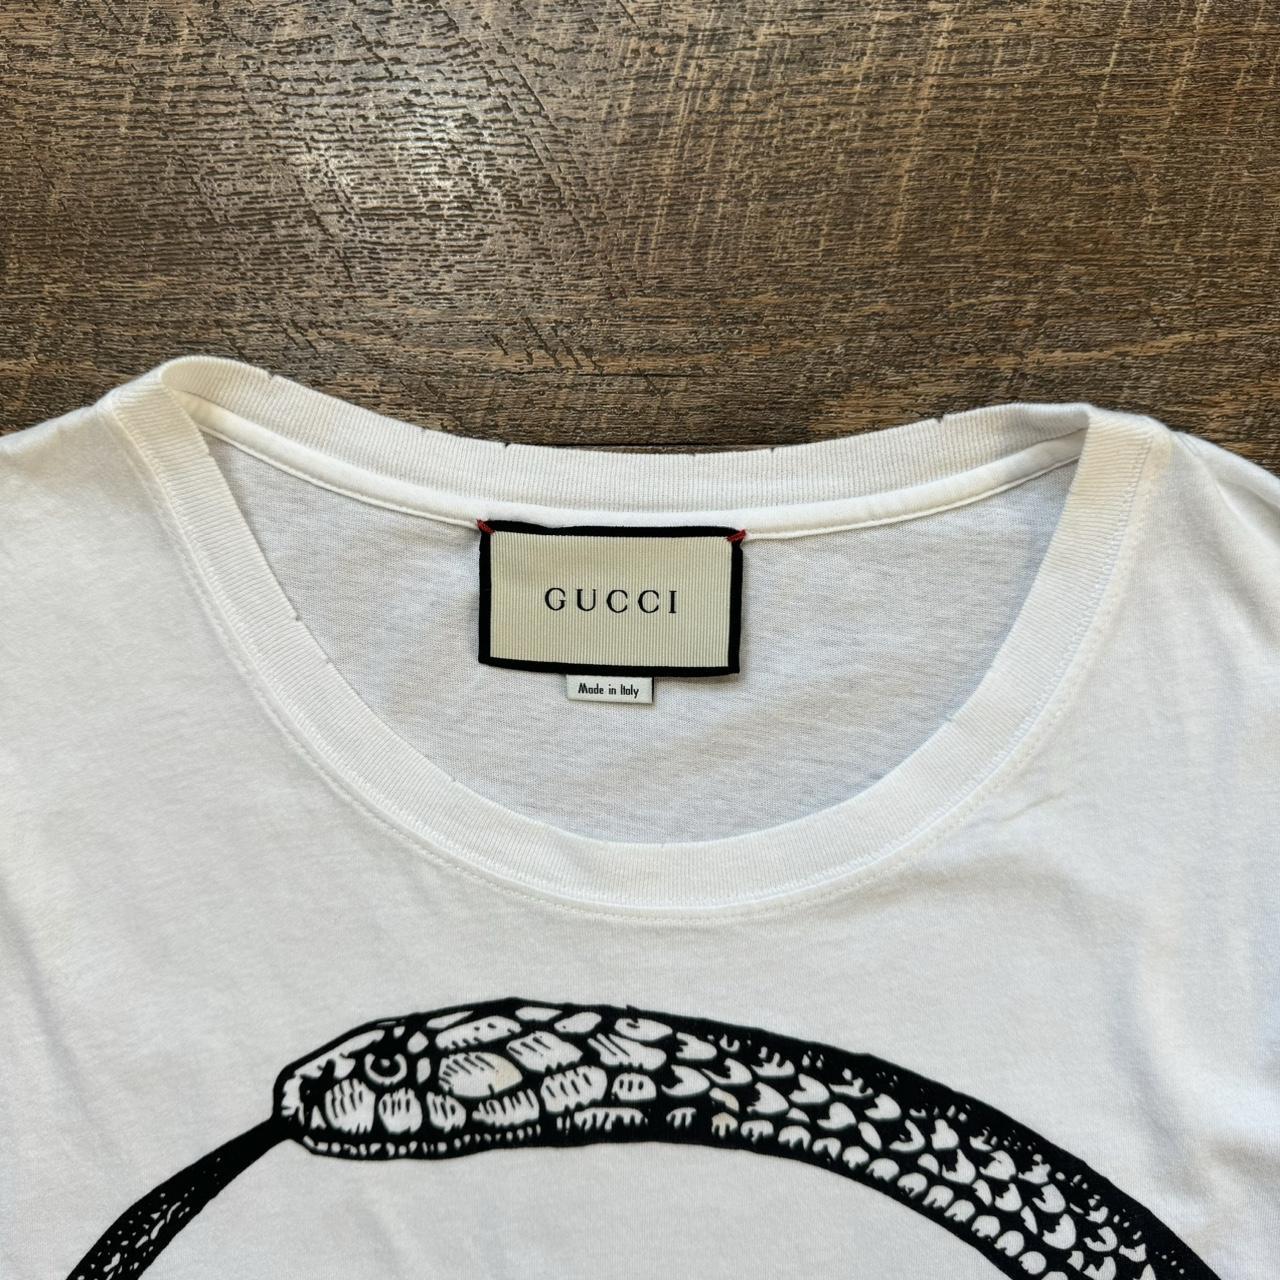 Gucci Men's White T-shirt (4)